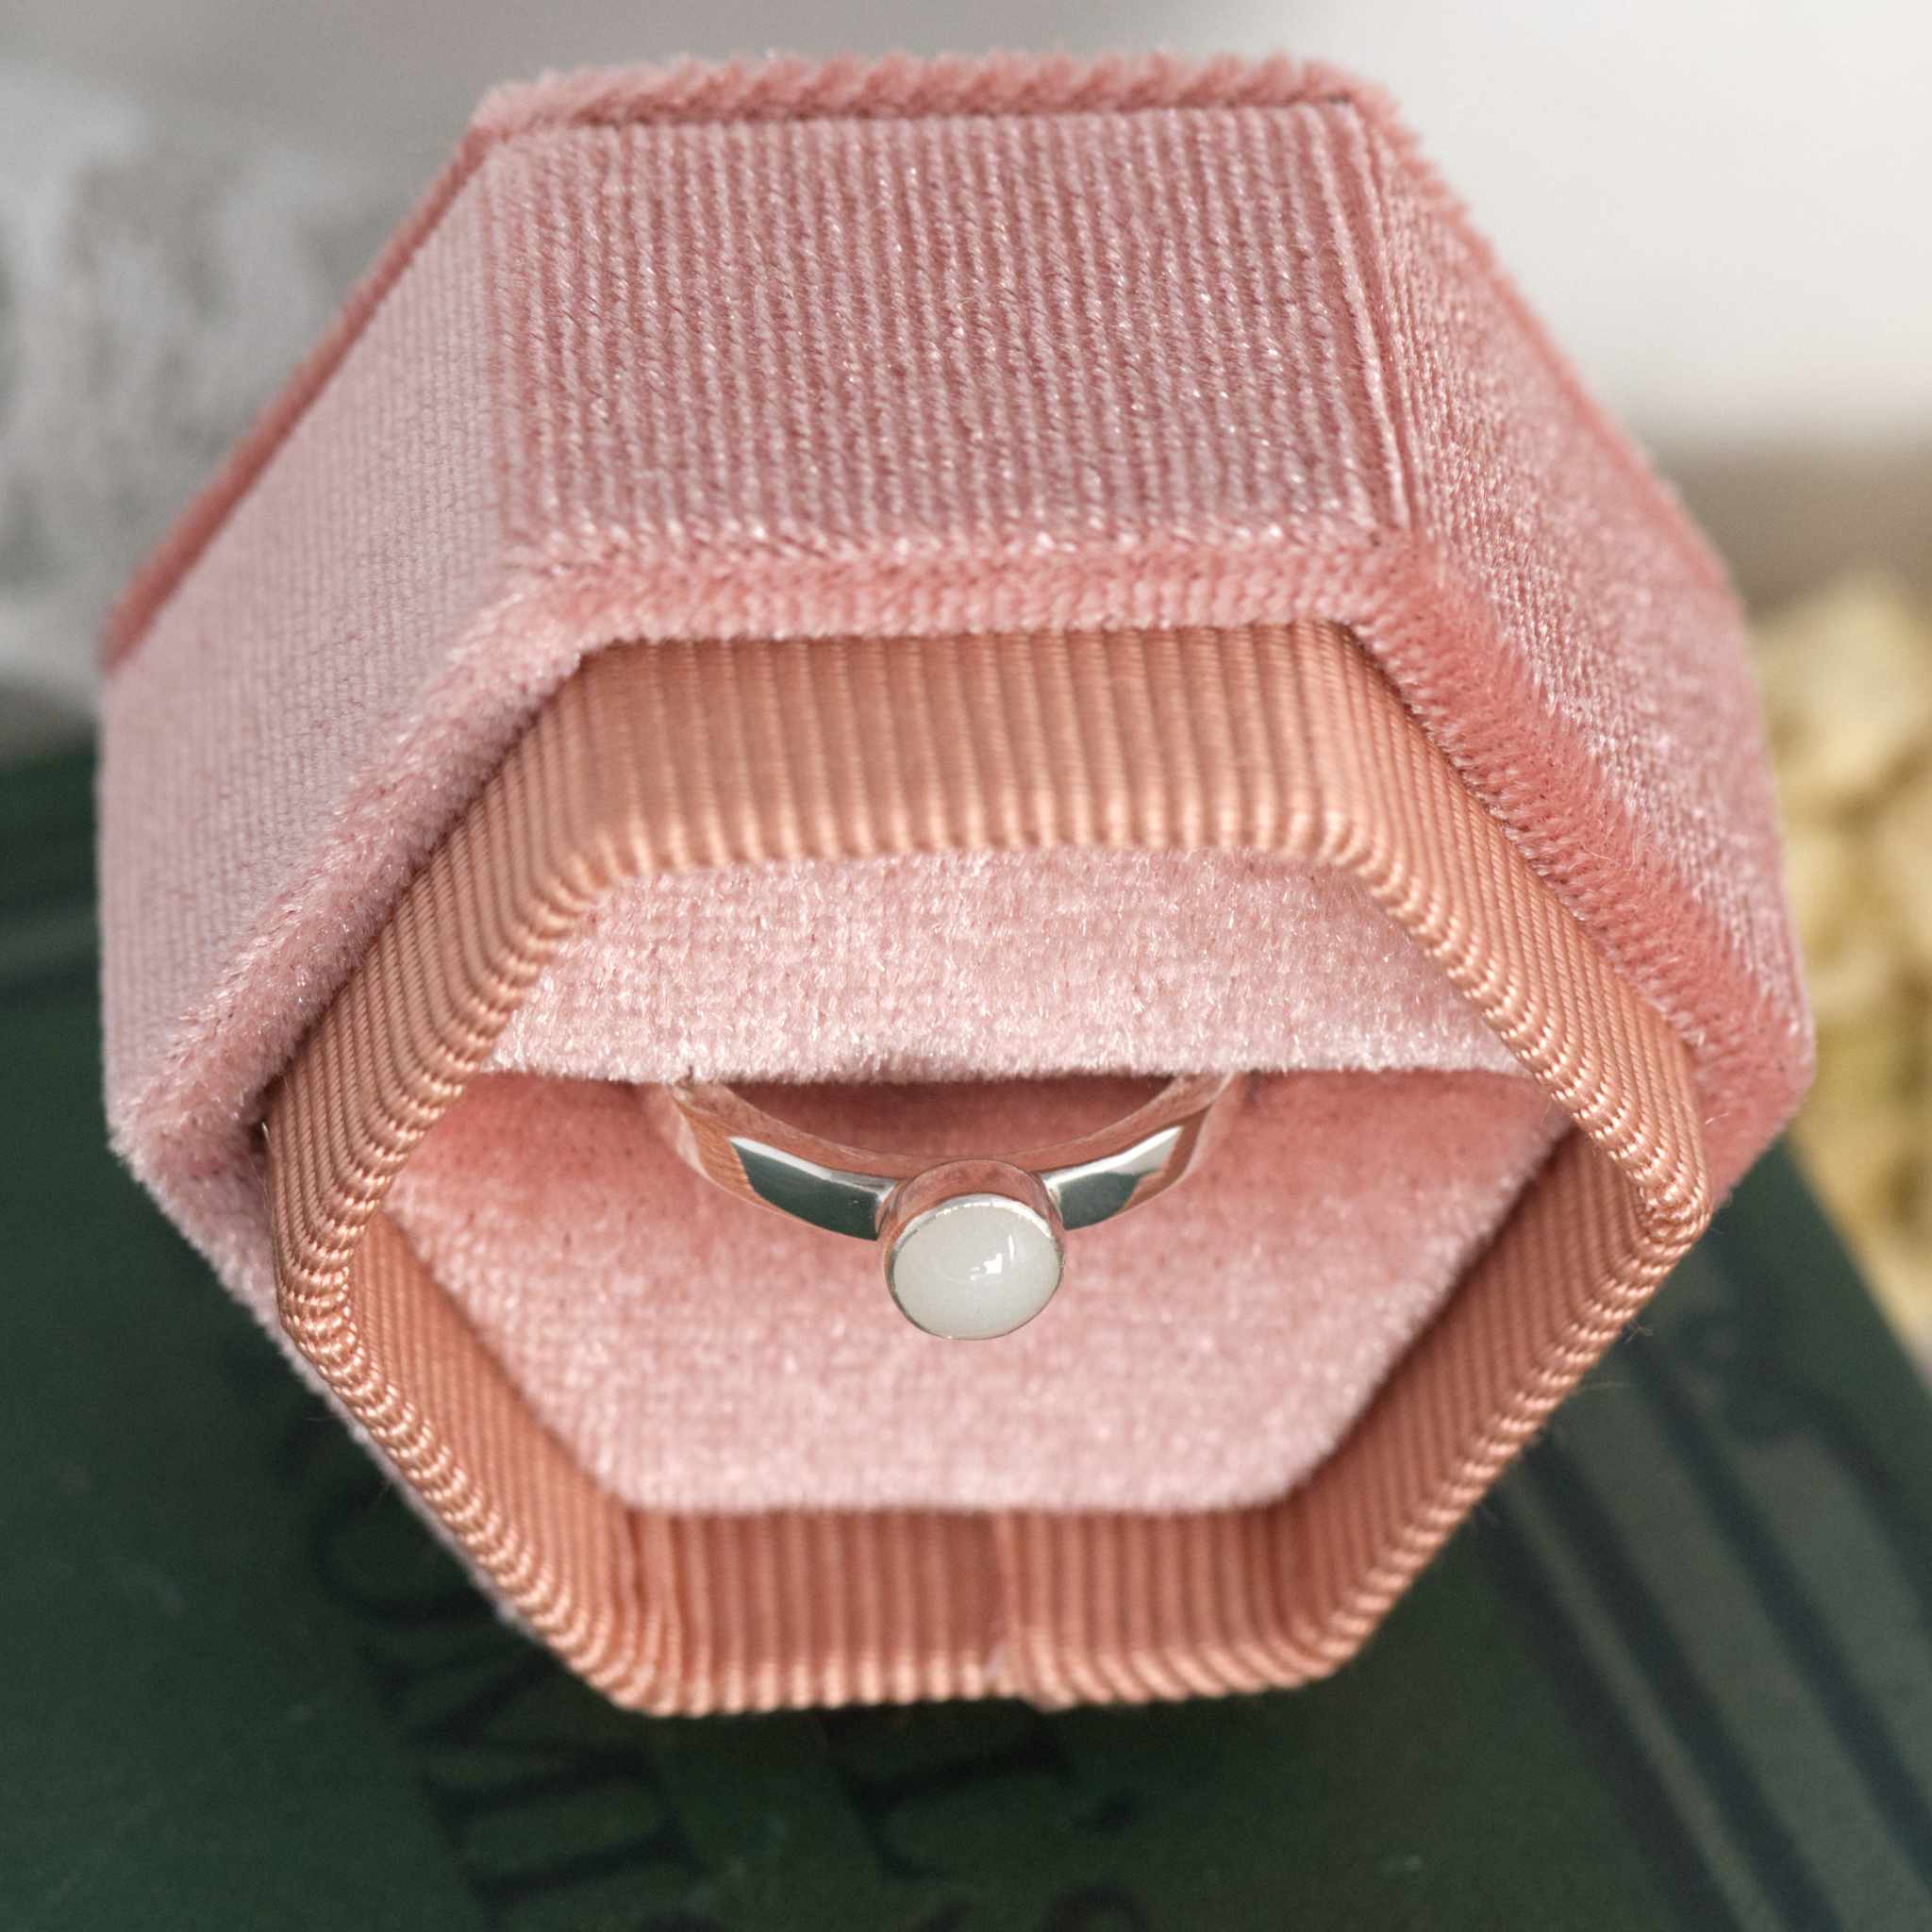 Cherish Luxe ring